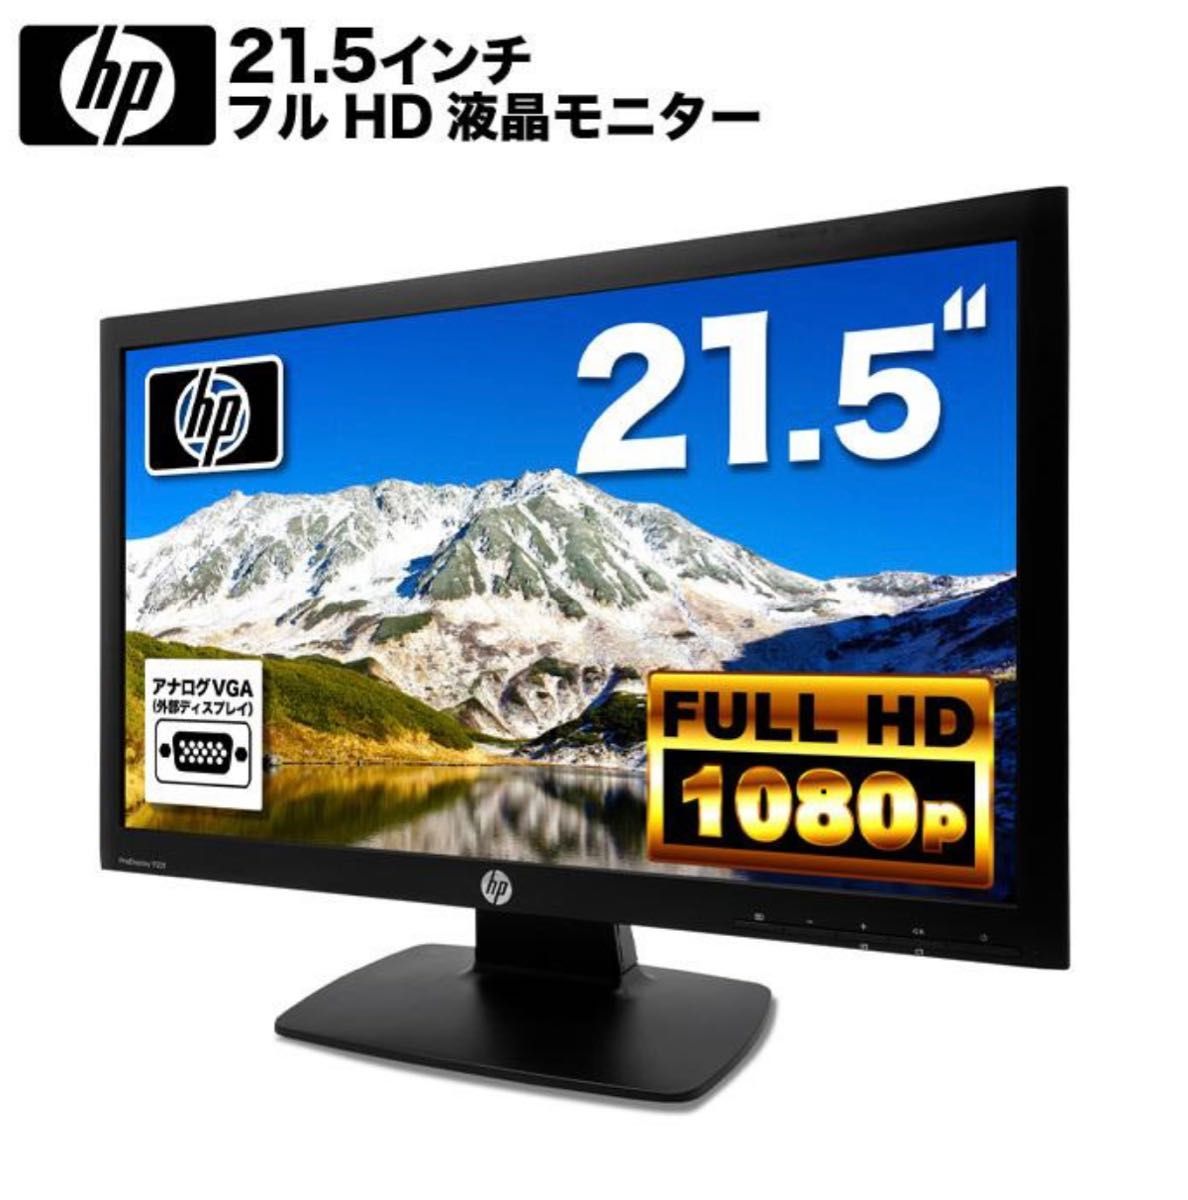 期間限定HP ProDisplay P221 21.5インチワイド液晶1920× 1080 フルHD D-SUB/DVI 保証付き